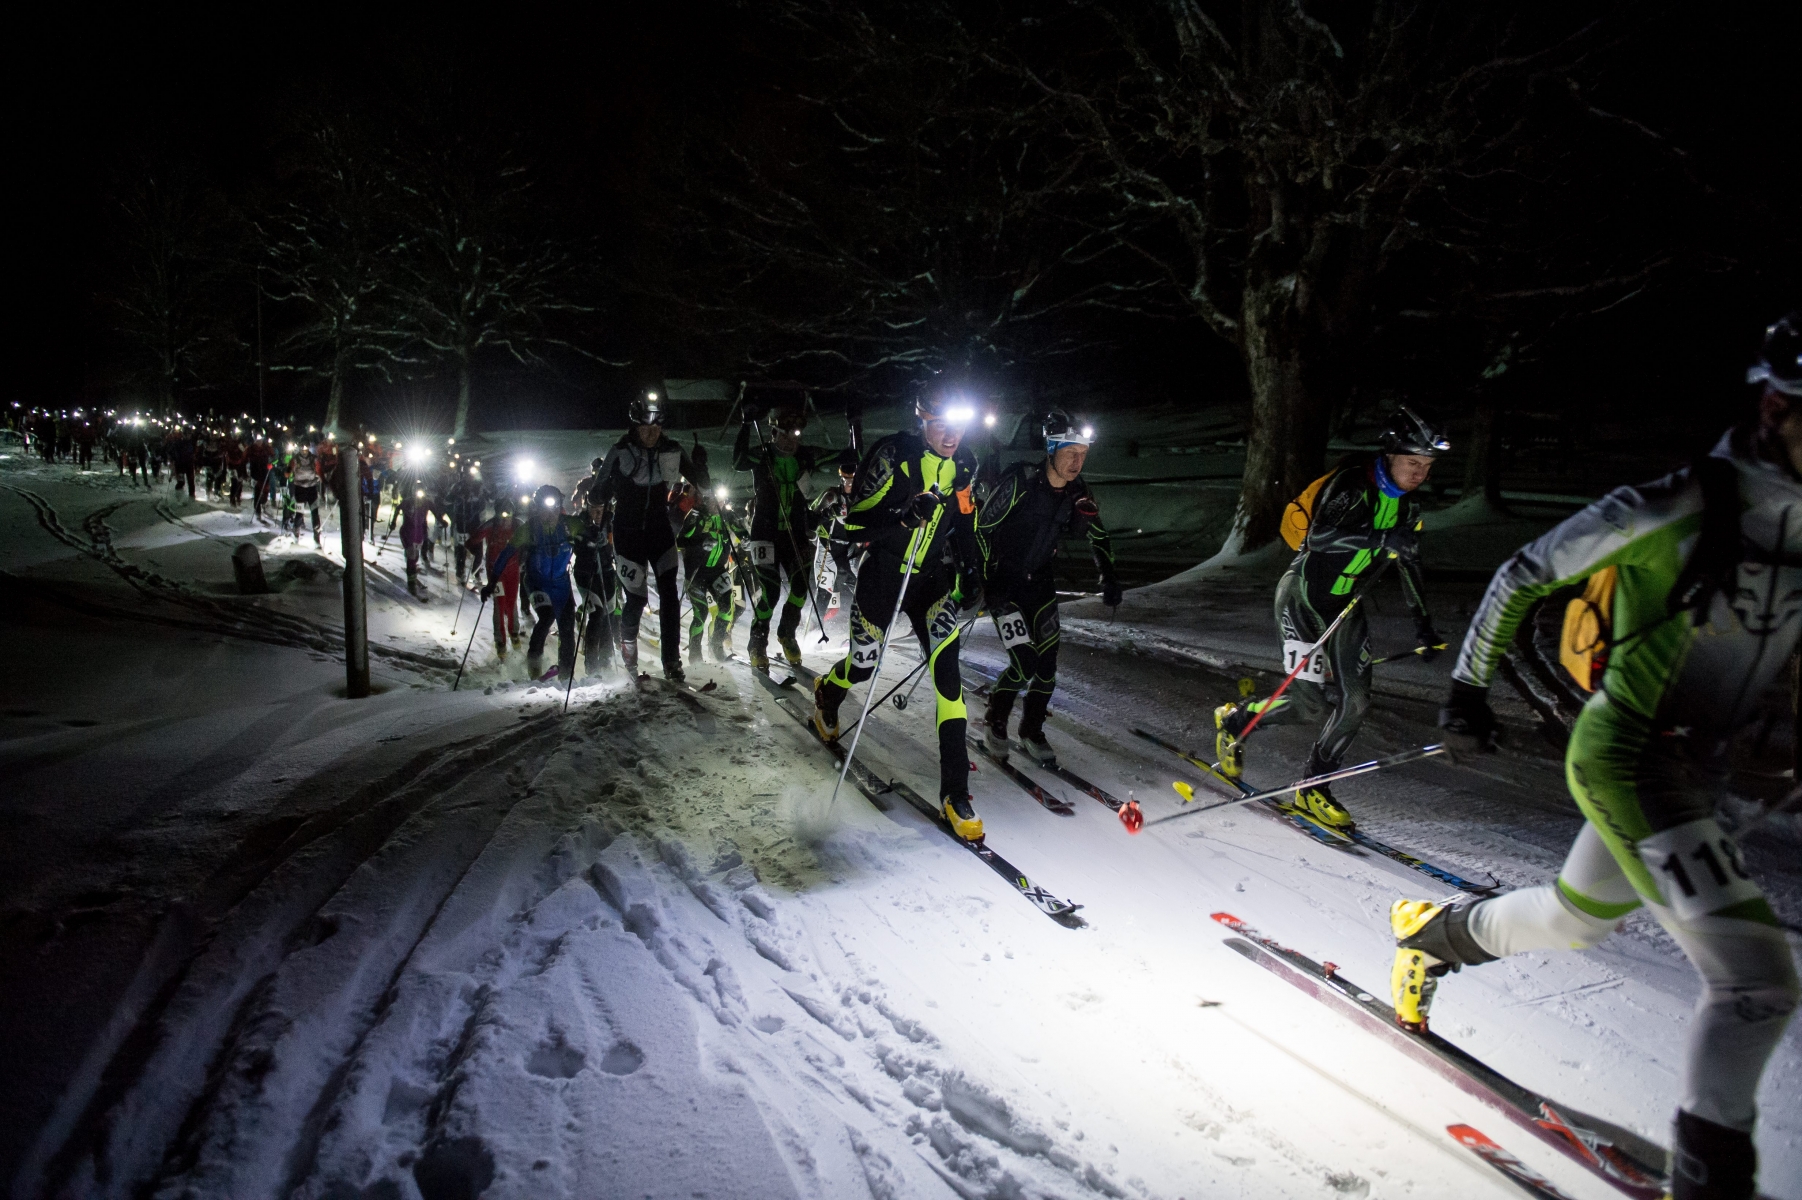 Ski-alpinisme. Nocturne des Gollieres. 6e edition de la course de ski de randonnee entre Les Hauts-Geneveys et Tete-de-Ran

Les Hauts-Geneveys, le 15.01.2016
Photo : Lucas Vuitel SKI-ALPINISME